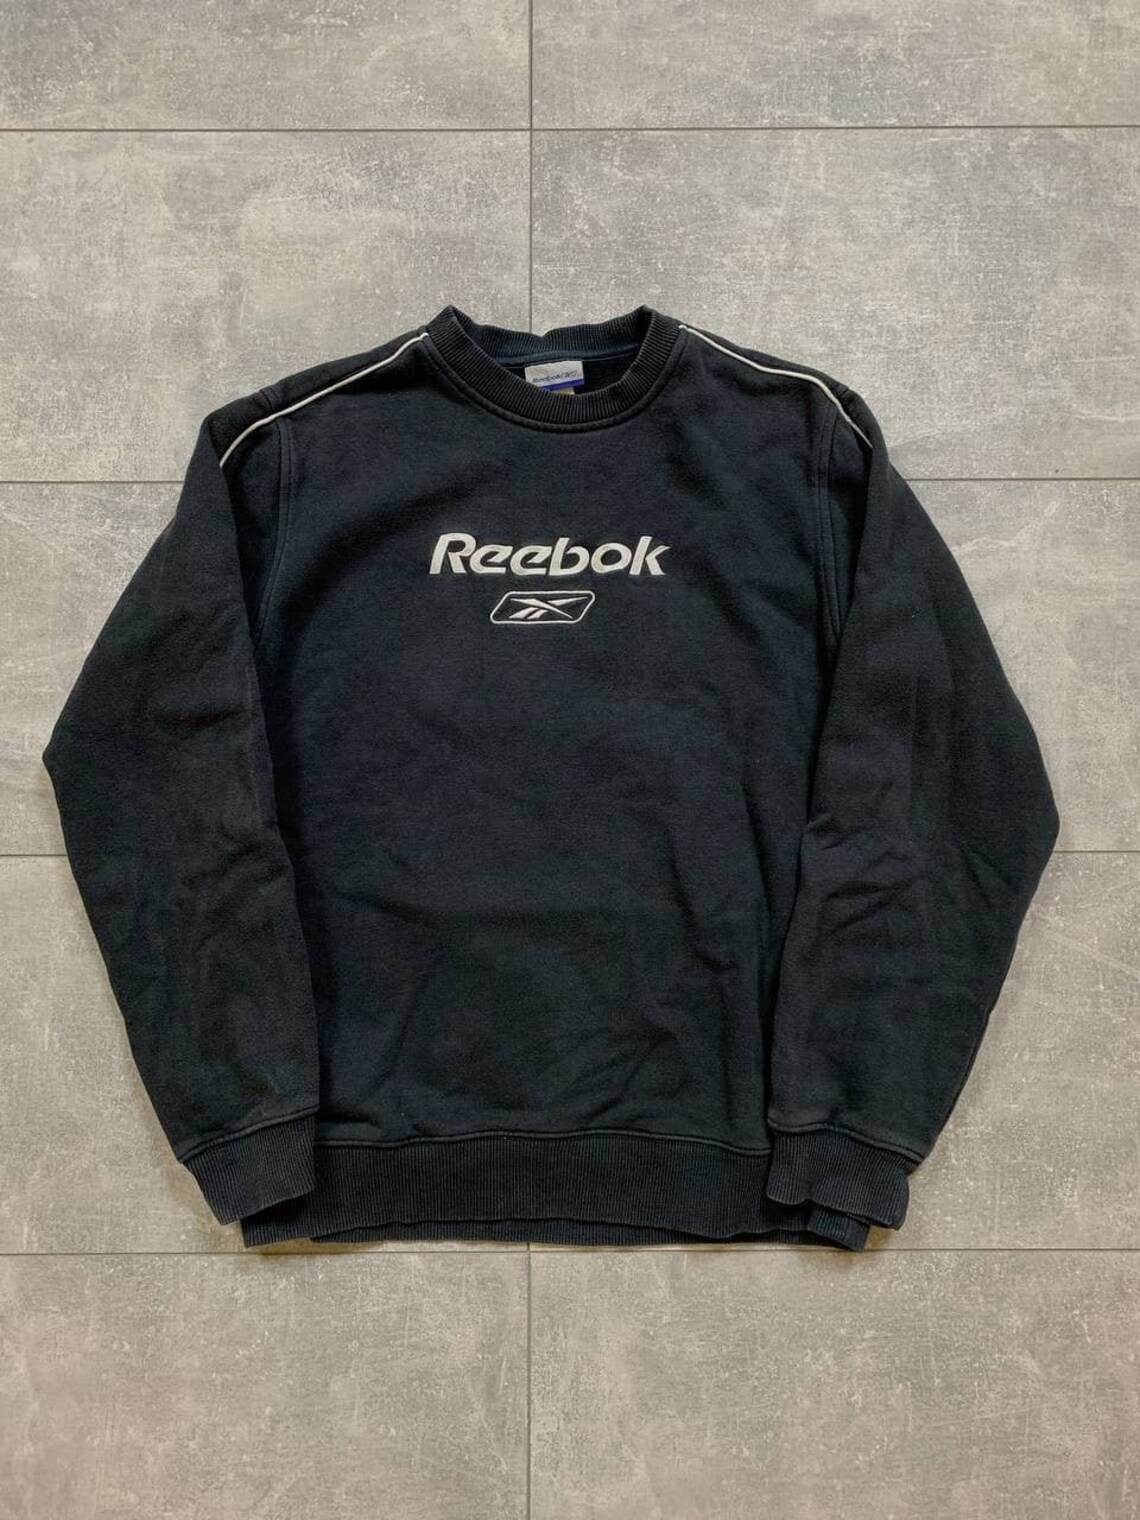 Reebok vintage sweatshirt crewneck big logo | Etsy